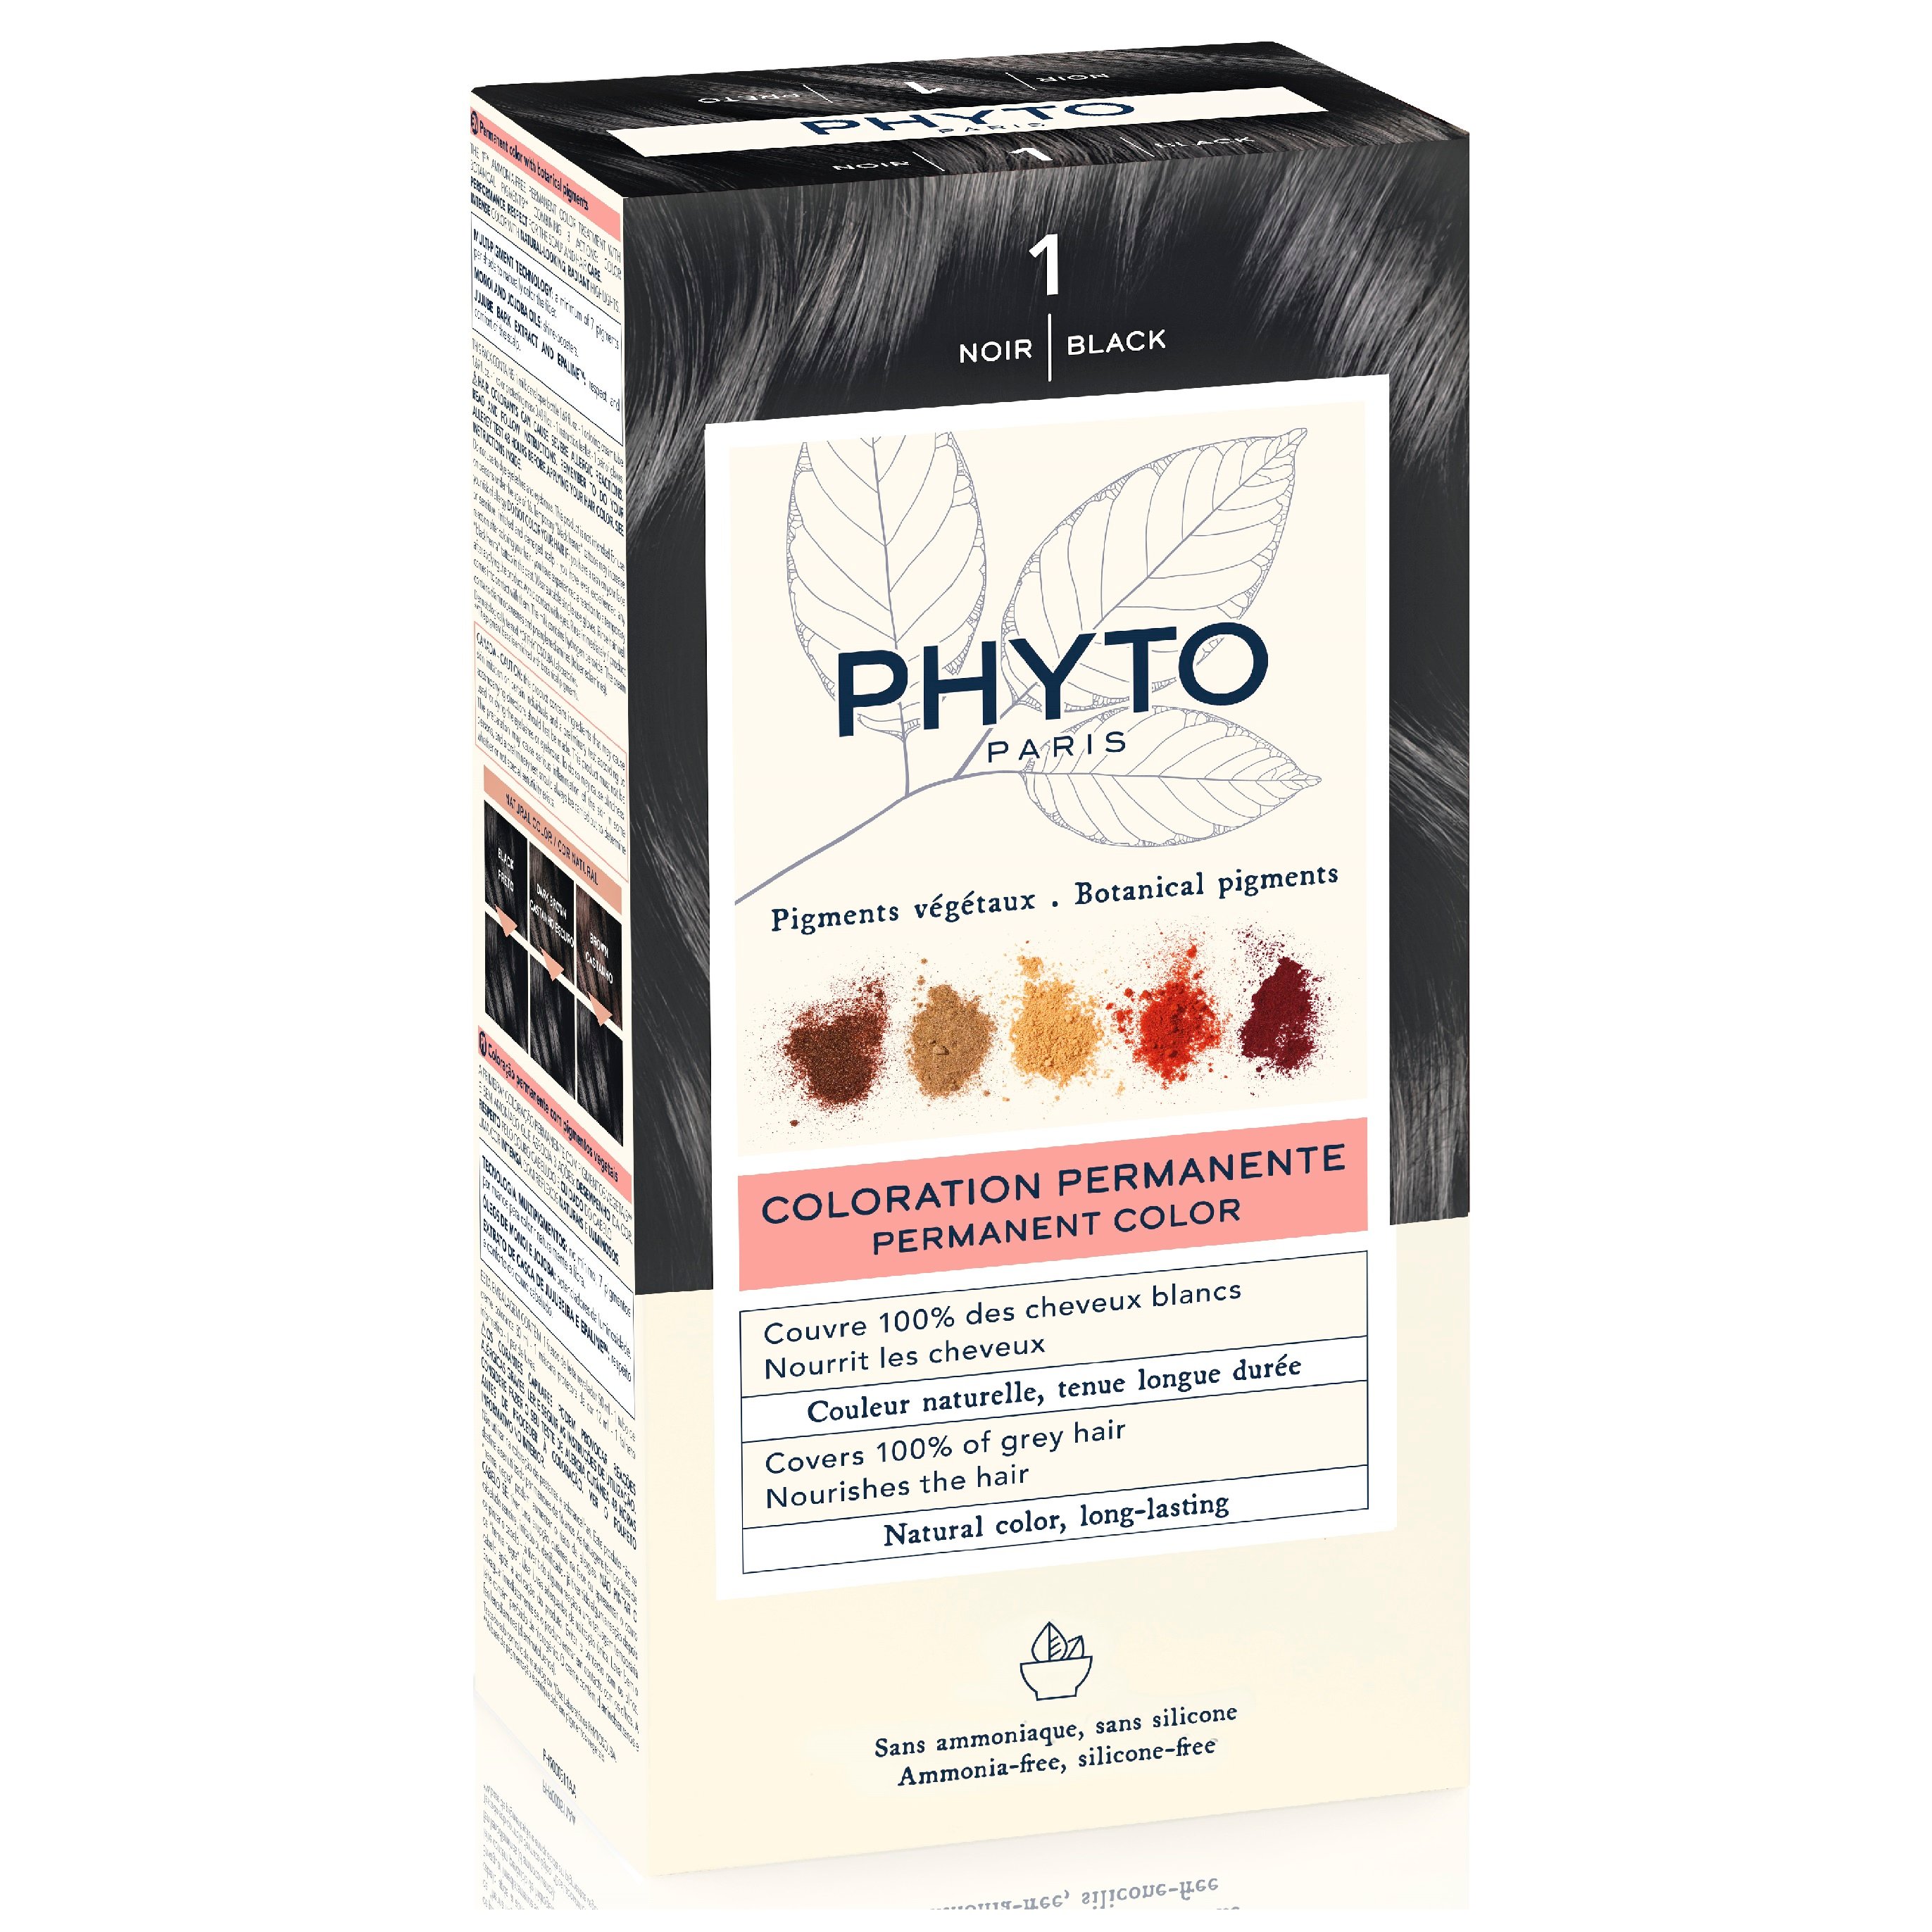 Крем-фарба для волосся Phyto Phytocolor, відтінок 1 (чорний), 112 мл (РН10016) - фото 2